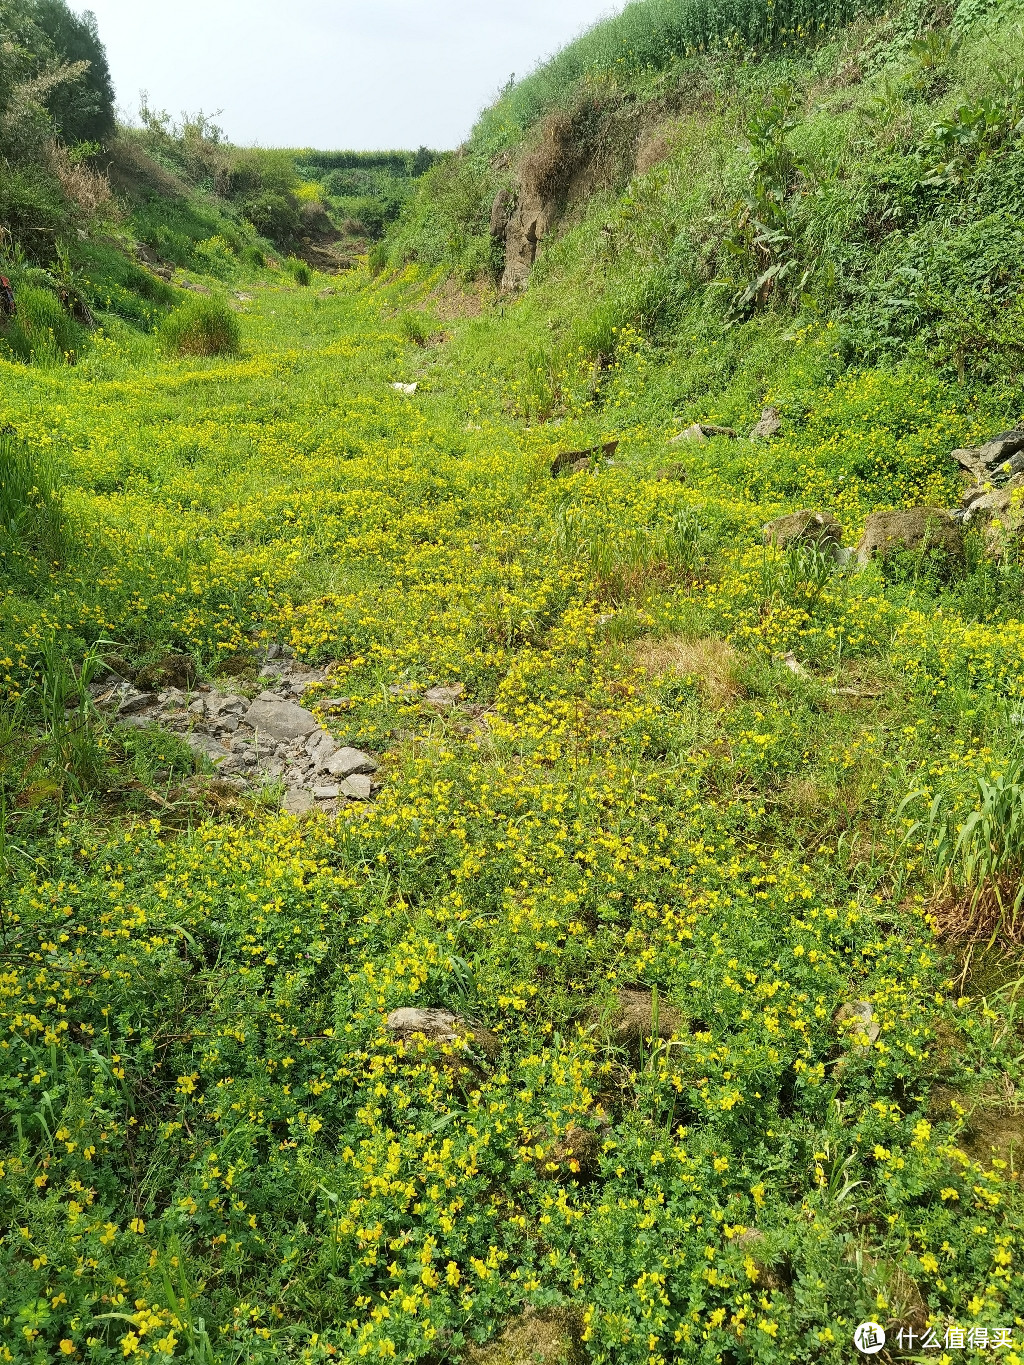 从花田出来，有一段挺长的干枯河道，上面长满了故事的小黄花。。。体验也不错，走在河床上的机会可是不多呢